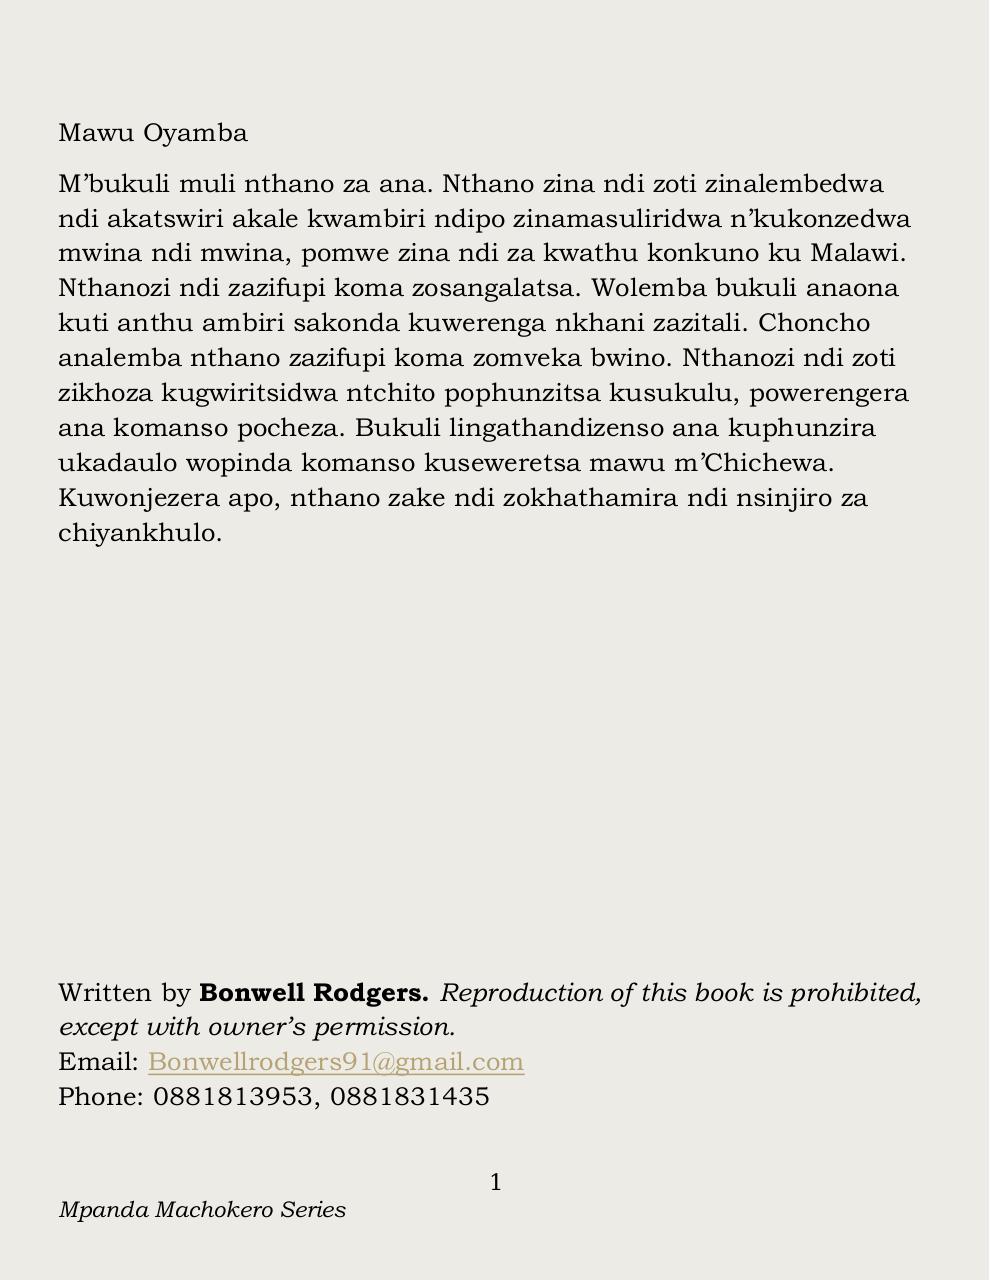 Mpanda Machokero Series by Bonwell Rodgers [Finished Book].pdf - page 2/136